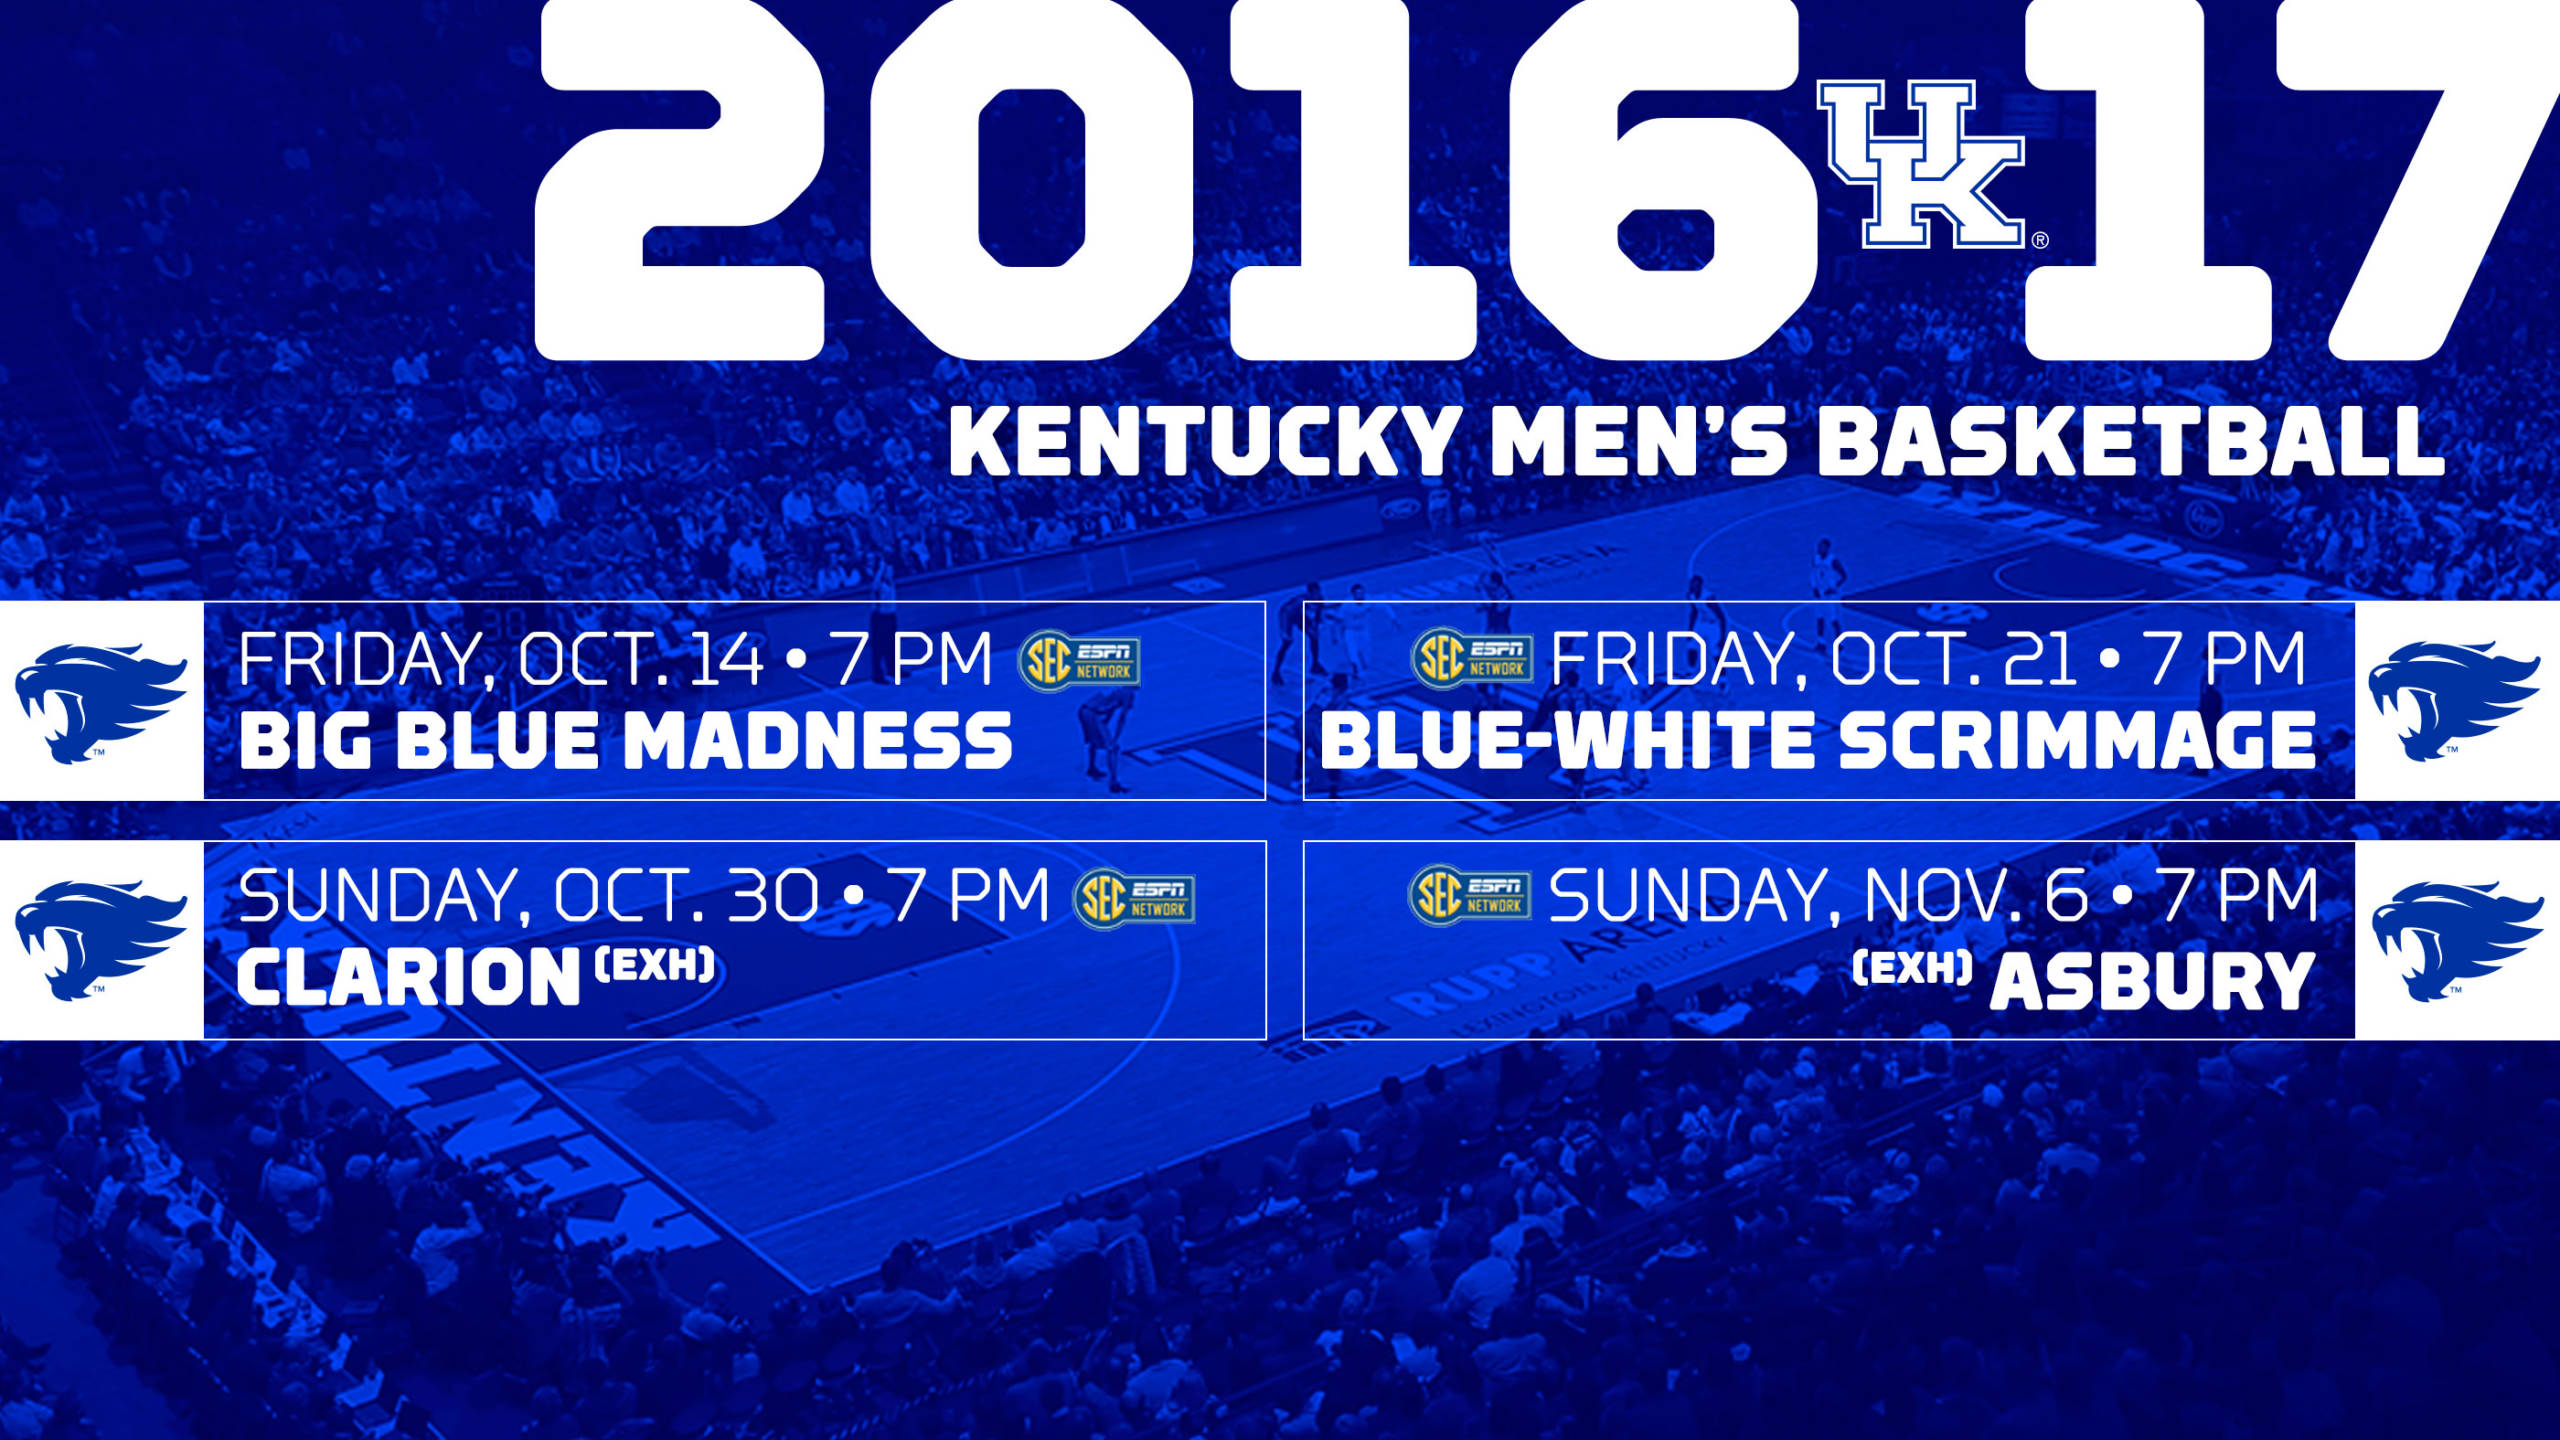 Kentucky Men’s Basketball Announces Exhibition Schedule